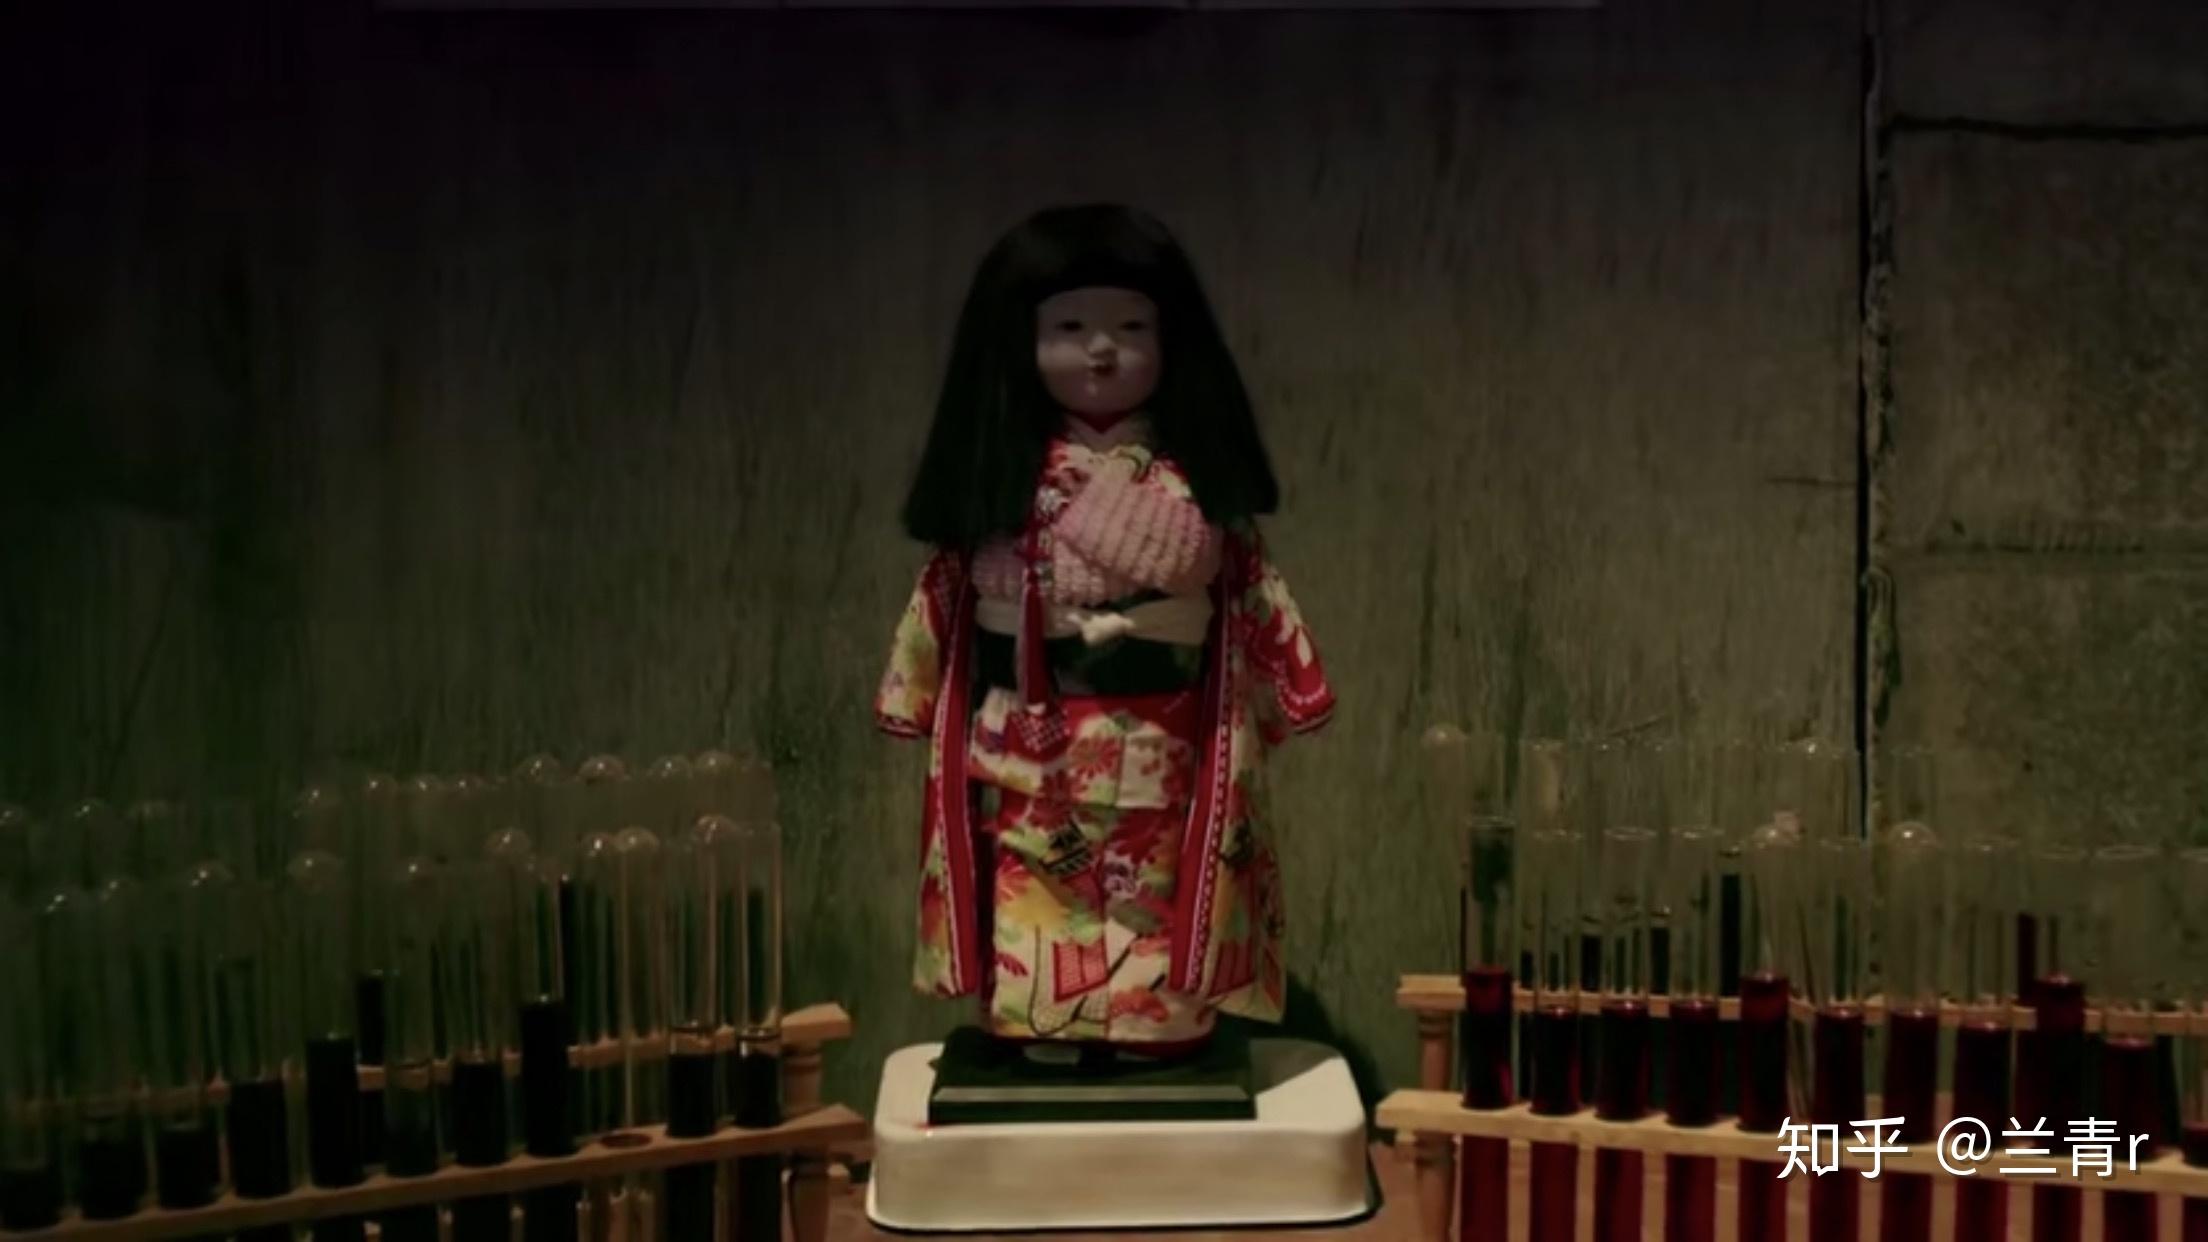 灵魂摆渡里的日本鬼娃娃是什么身份? - 知乎